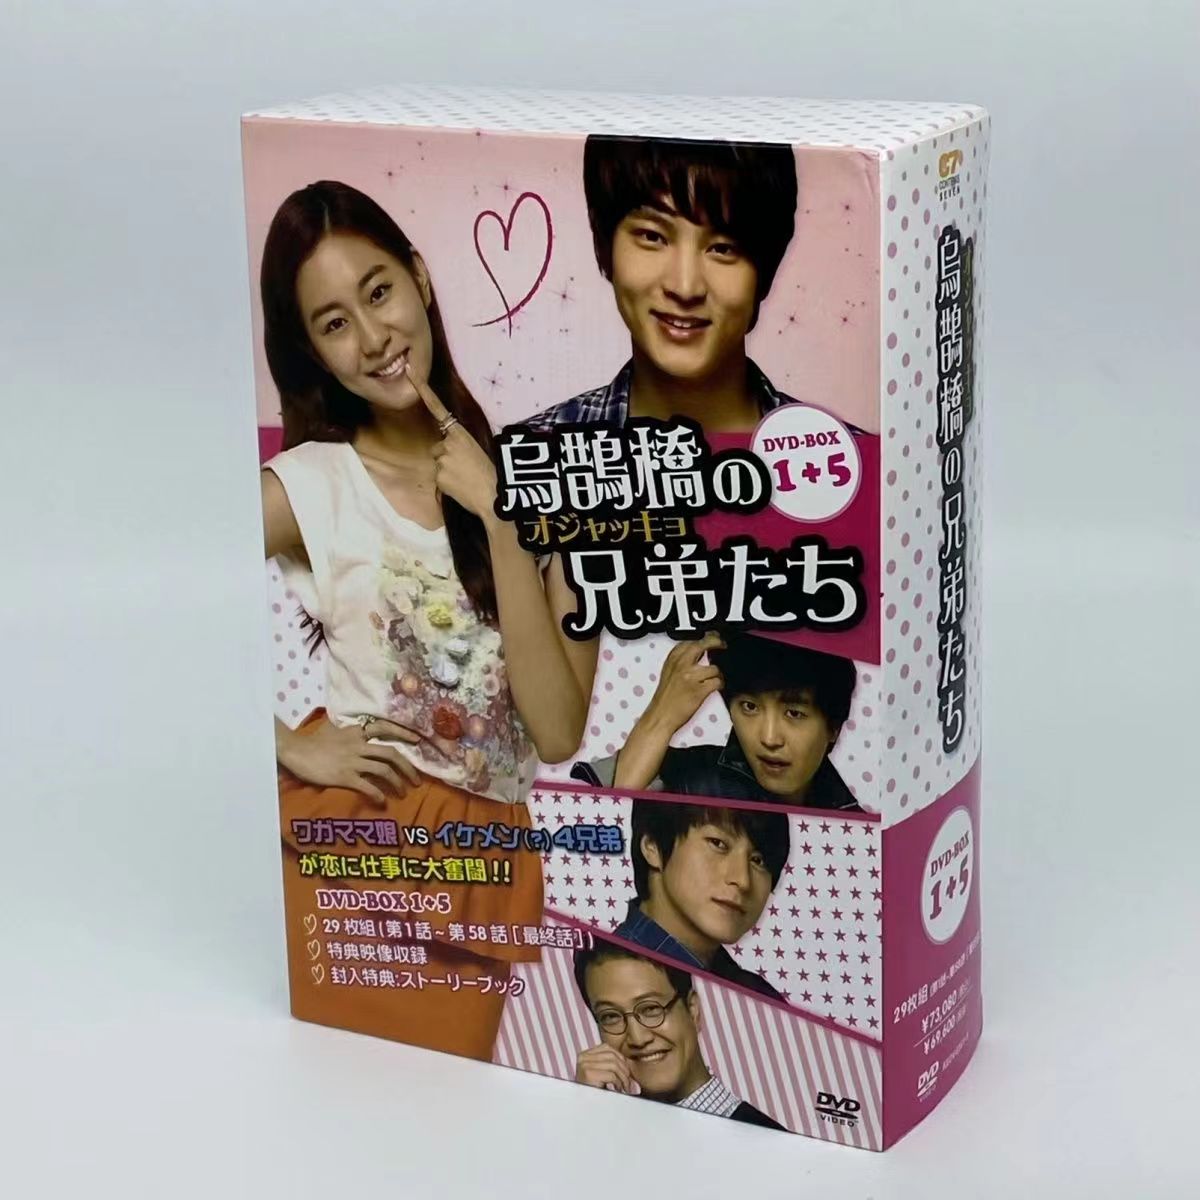 韓国TVドラマ 日本語版 烏鵲橋オジャッキョの兄弟たち DVD-BOX1+5全29枚